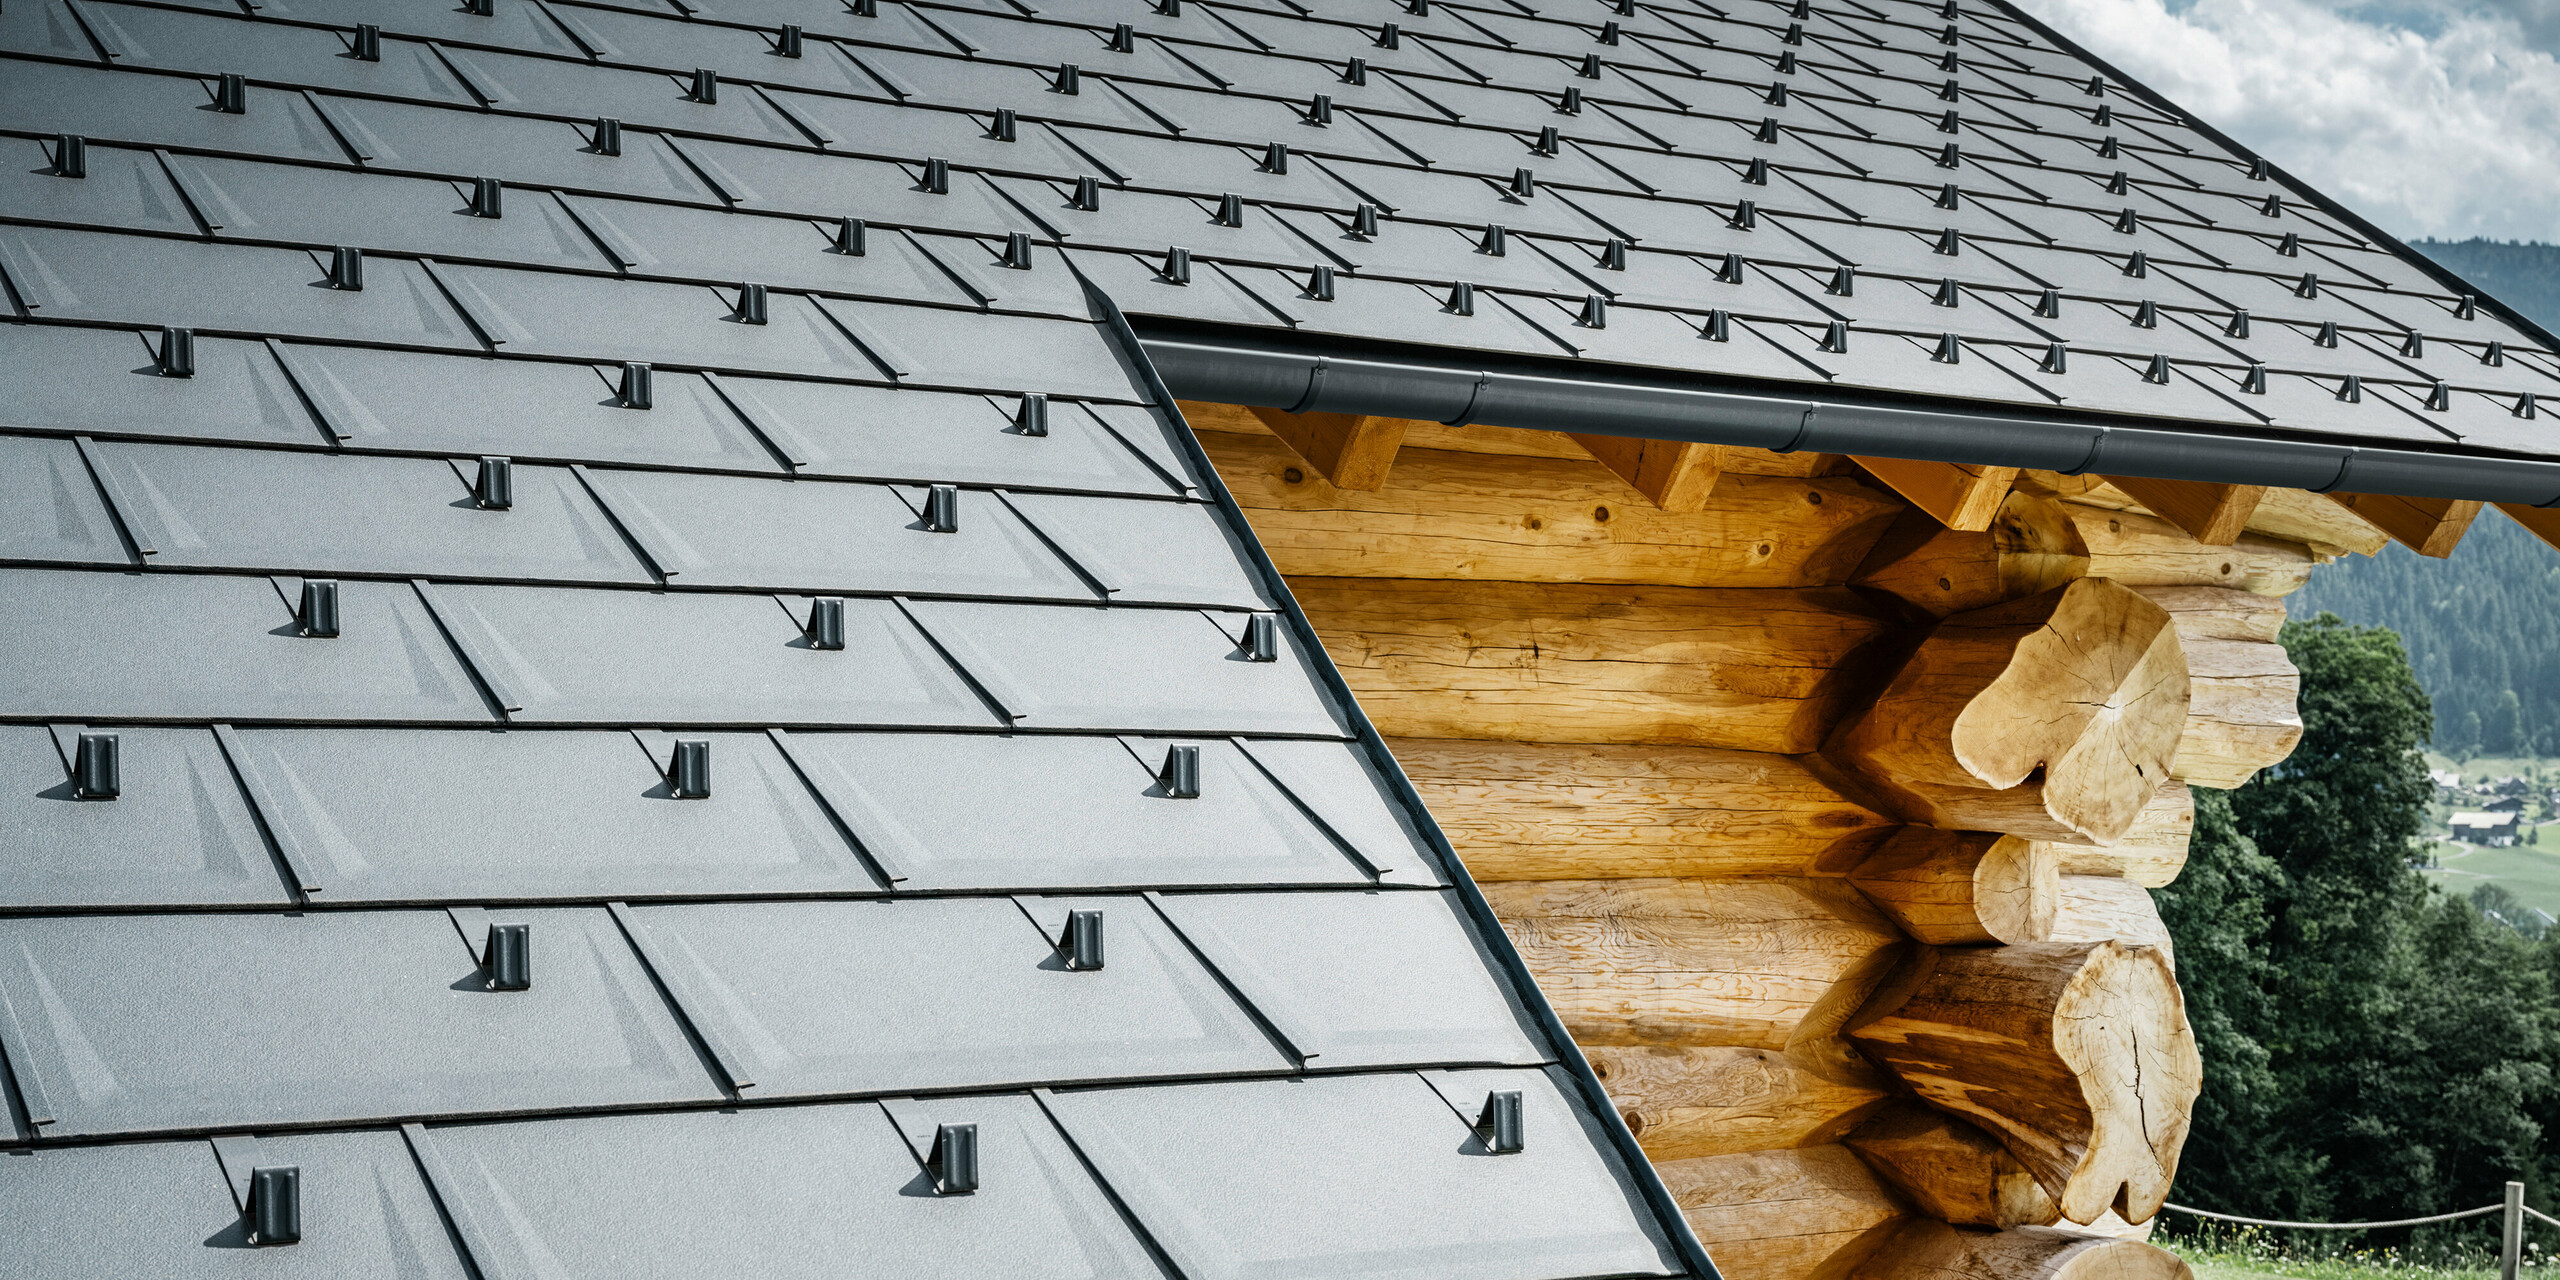 Detailaufnahme eines Daches mit PREFA Dachplatten R.16 in der Farbe P.10 Anthrazit auf einem Blockhaus in Gosau, Oberösterreich. Die präzise Verarbeitung und Montage der robusten Dachplatten zeigt die hohe Qualität der PREFA Aluminiumprodukte sowie die perfekte Integration moderner Bauelemente aus Aluminium in traditionelle Gebäudetypen aus Österreich. Im Vordergrund sind die charakteristischen Schneestopper zu sehen, die Sicherheit im alpinen Winter gewährleisten. Dieses Bild fängt das harmonische Zusammenspiel von innovativen PREFA Dachsystemen mit der natürlichen Ästhetik des Holzblockhauses ein.